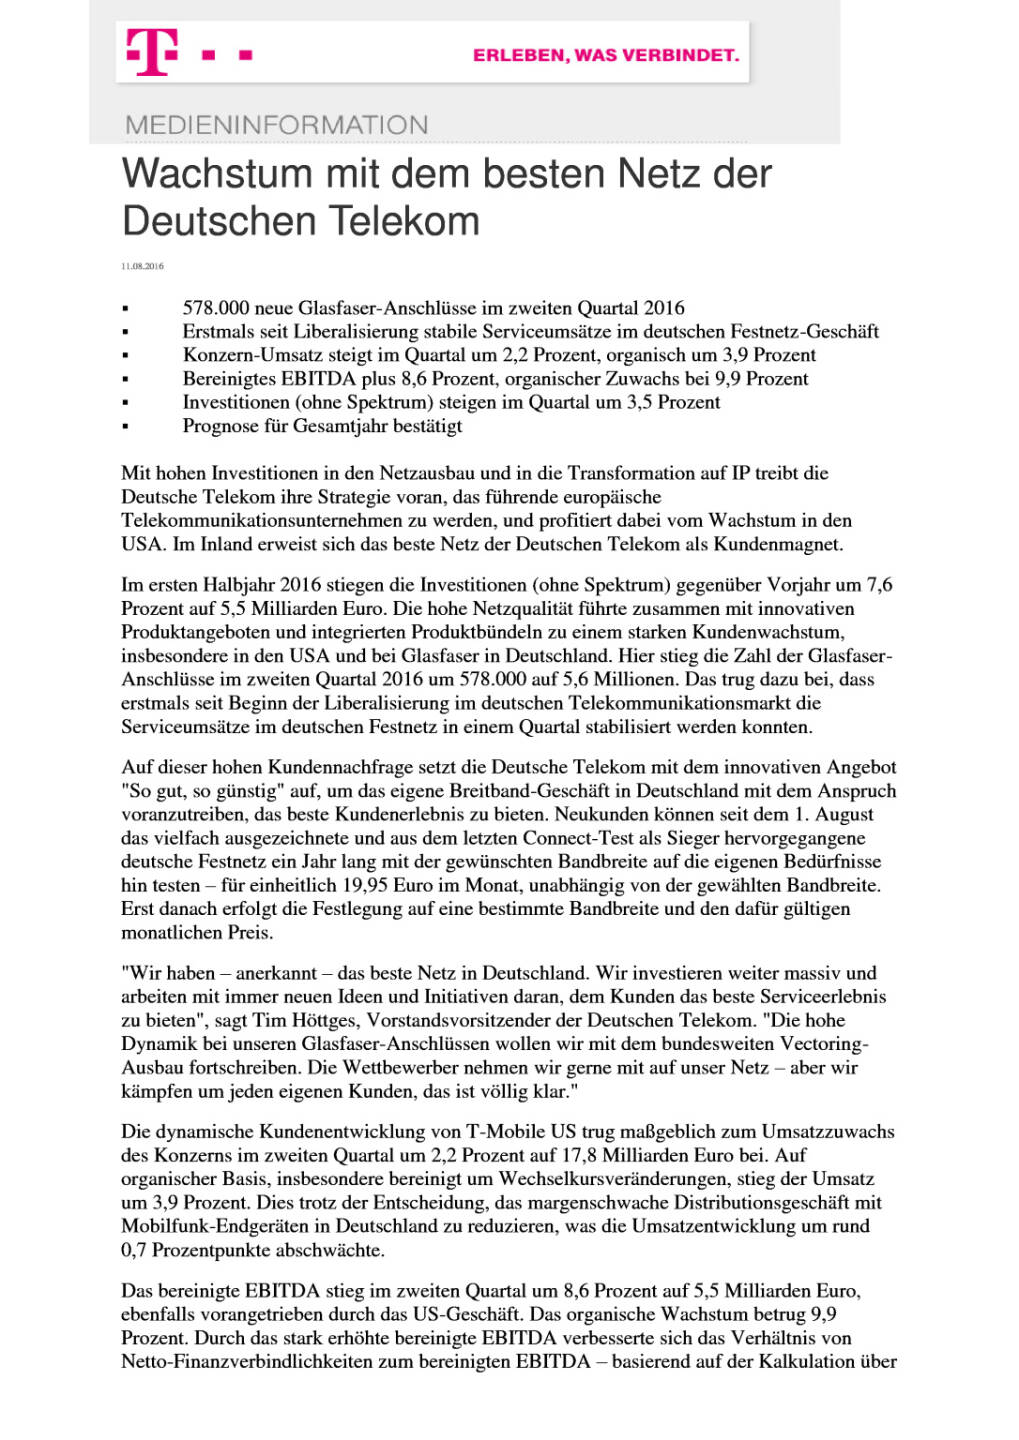 Wachstum mit dem besten Netz der Deutschen Telekom, Seite 1/6, komplettes Dokument unter http://boerse-social.com/static/uploads/file_1606_wachstum_mit_dem_besten_netz_der_deutschen_telekom.pdf